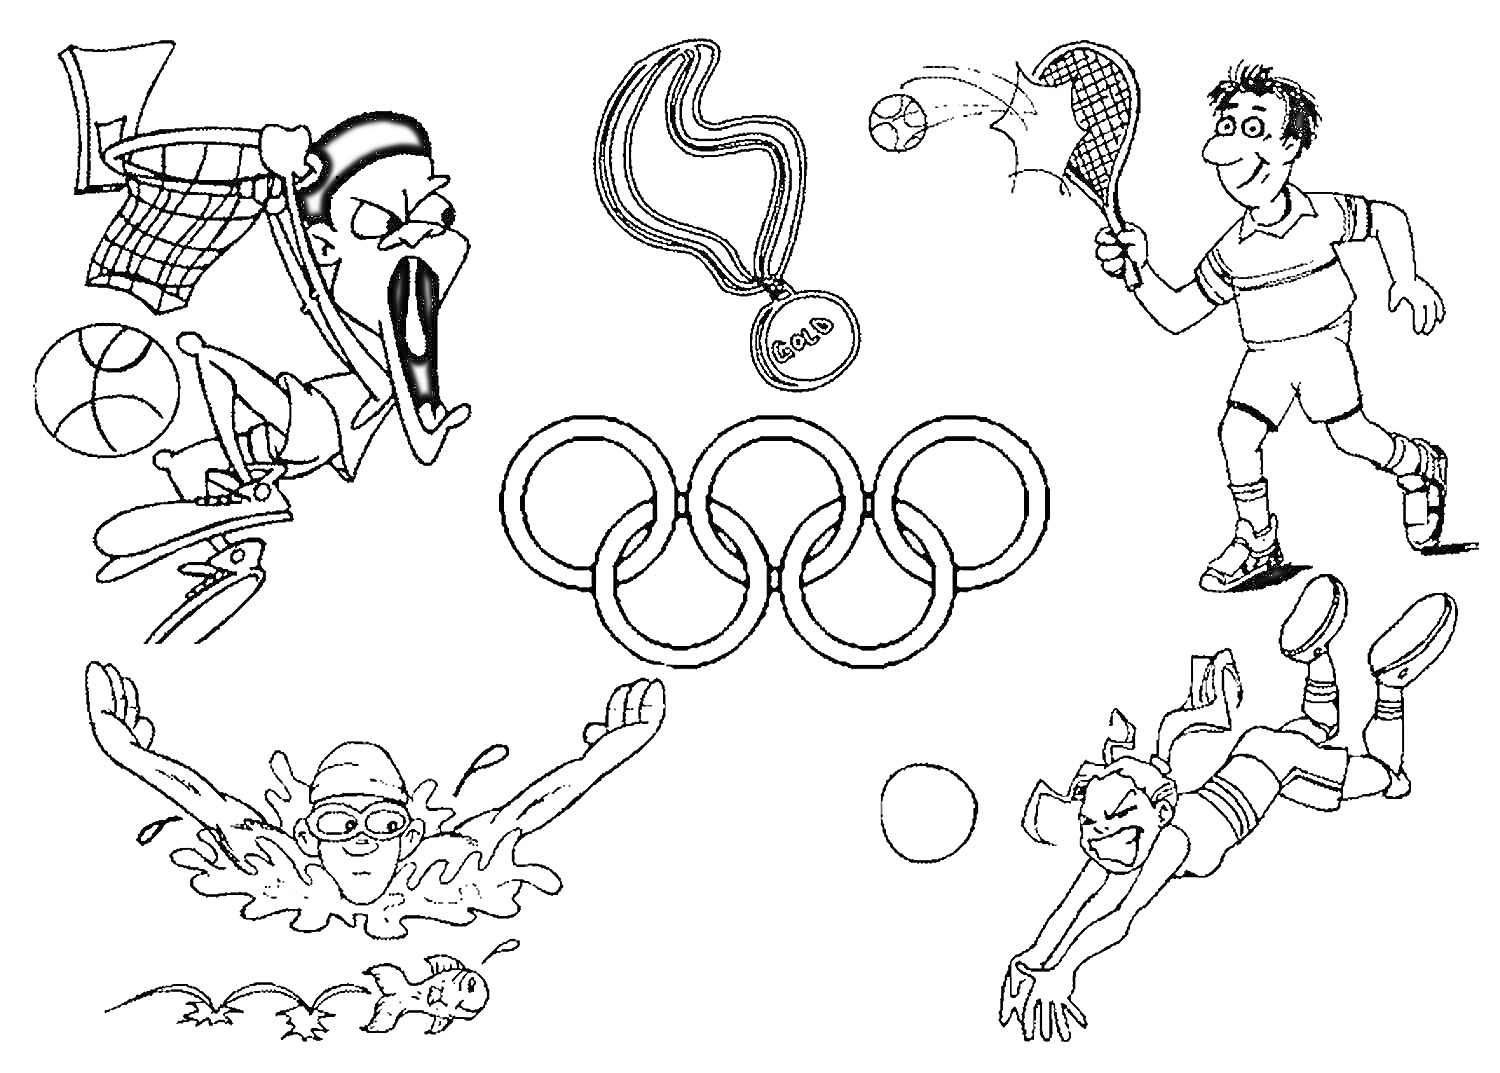 Раскраска Баскетболист, хоккеист с теннисной ракеткой, спортсмены: пловец, волейболист и теннисист с мячом, олимпийские кольца и медаль с надписью 